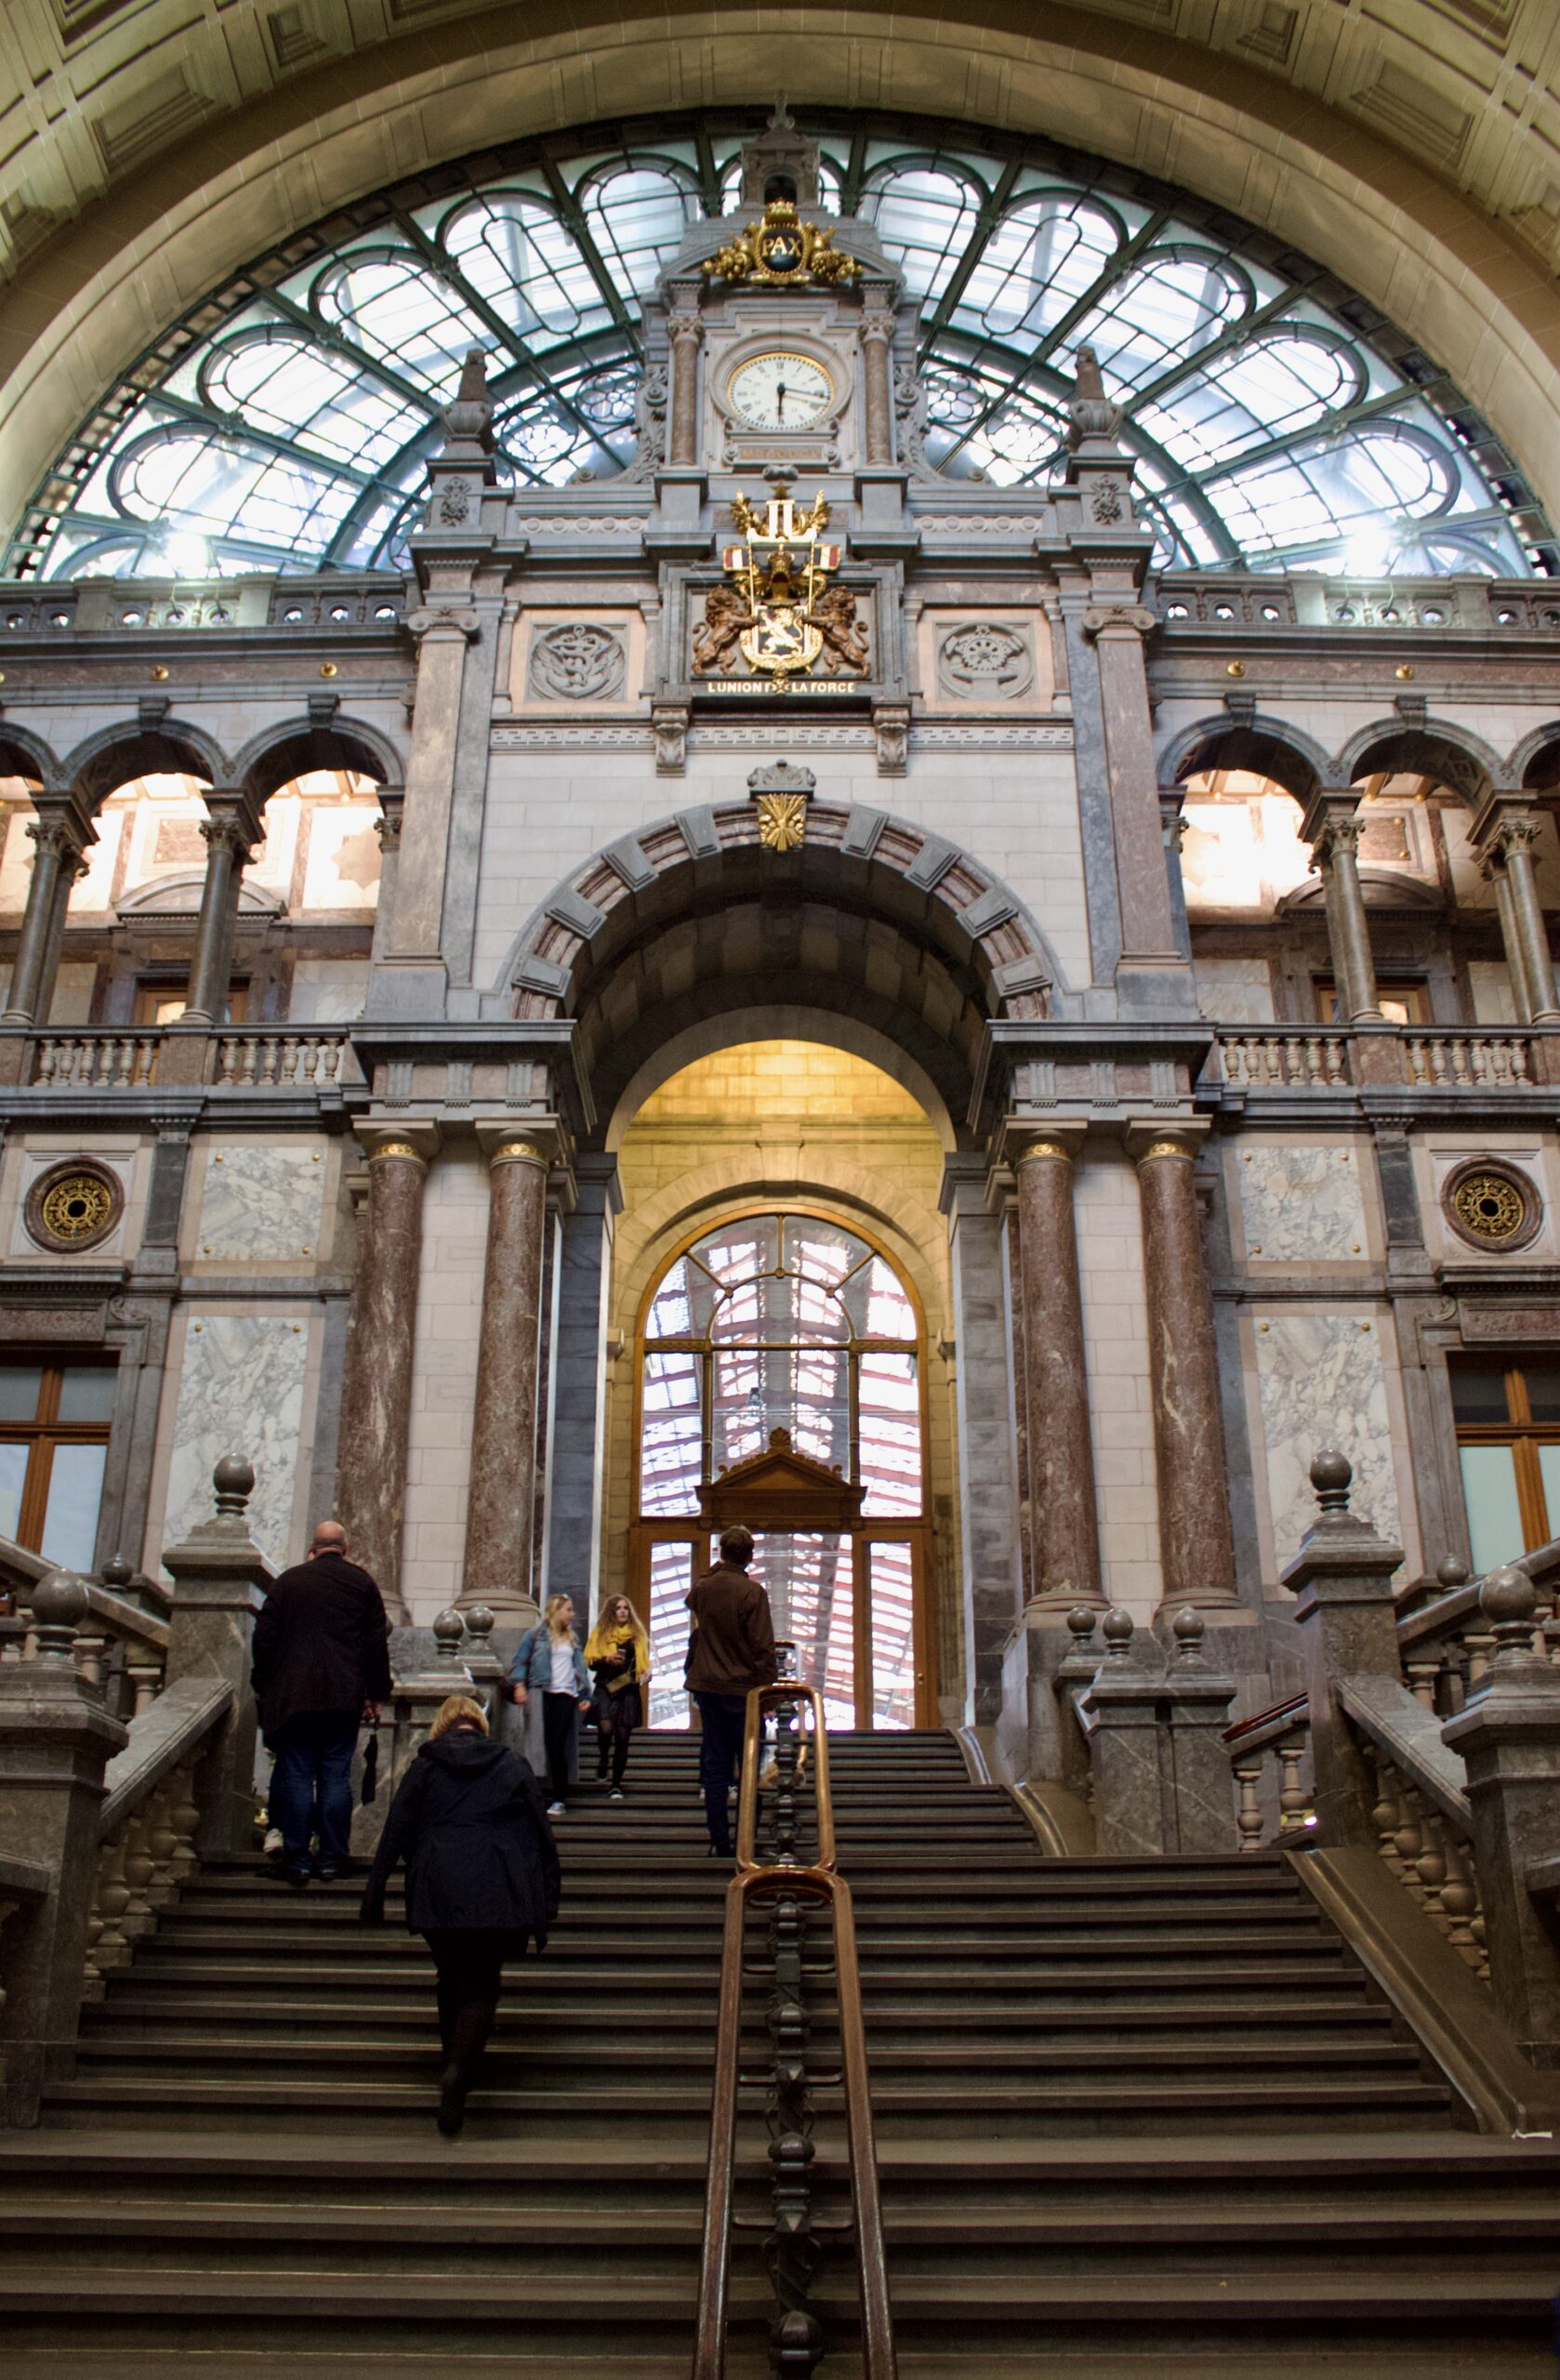 Antwerp-Central Railway Station